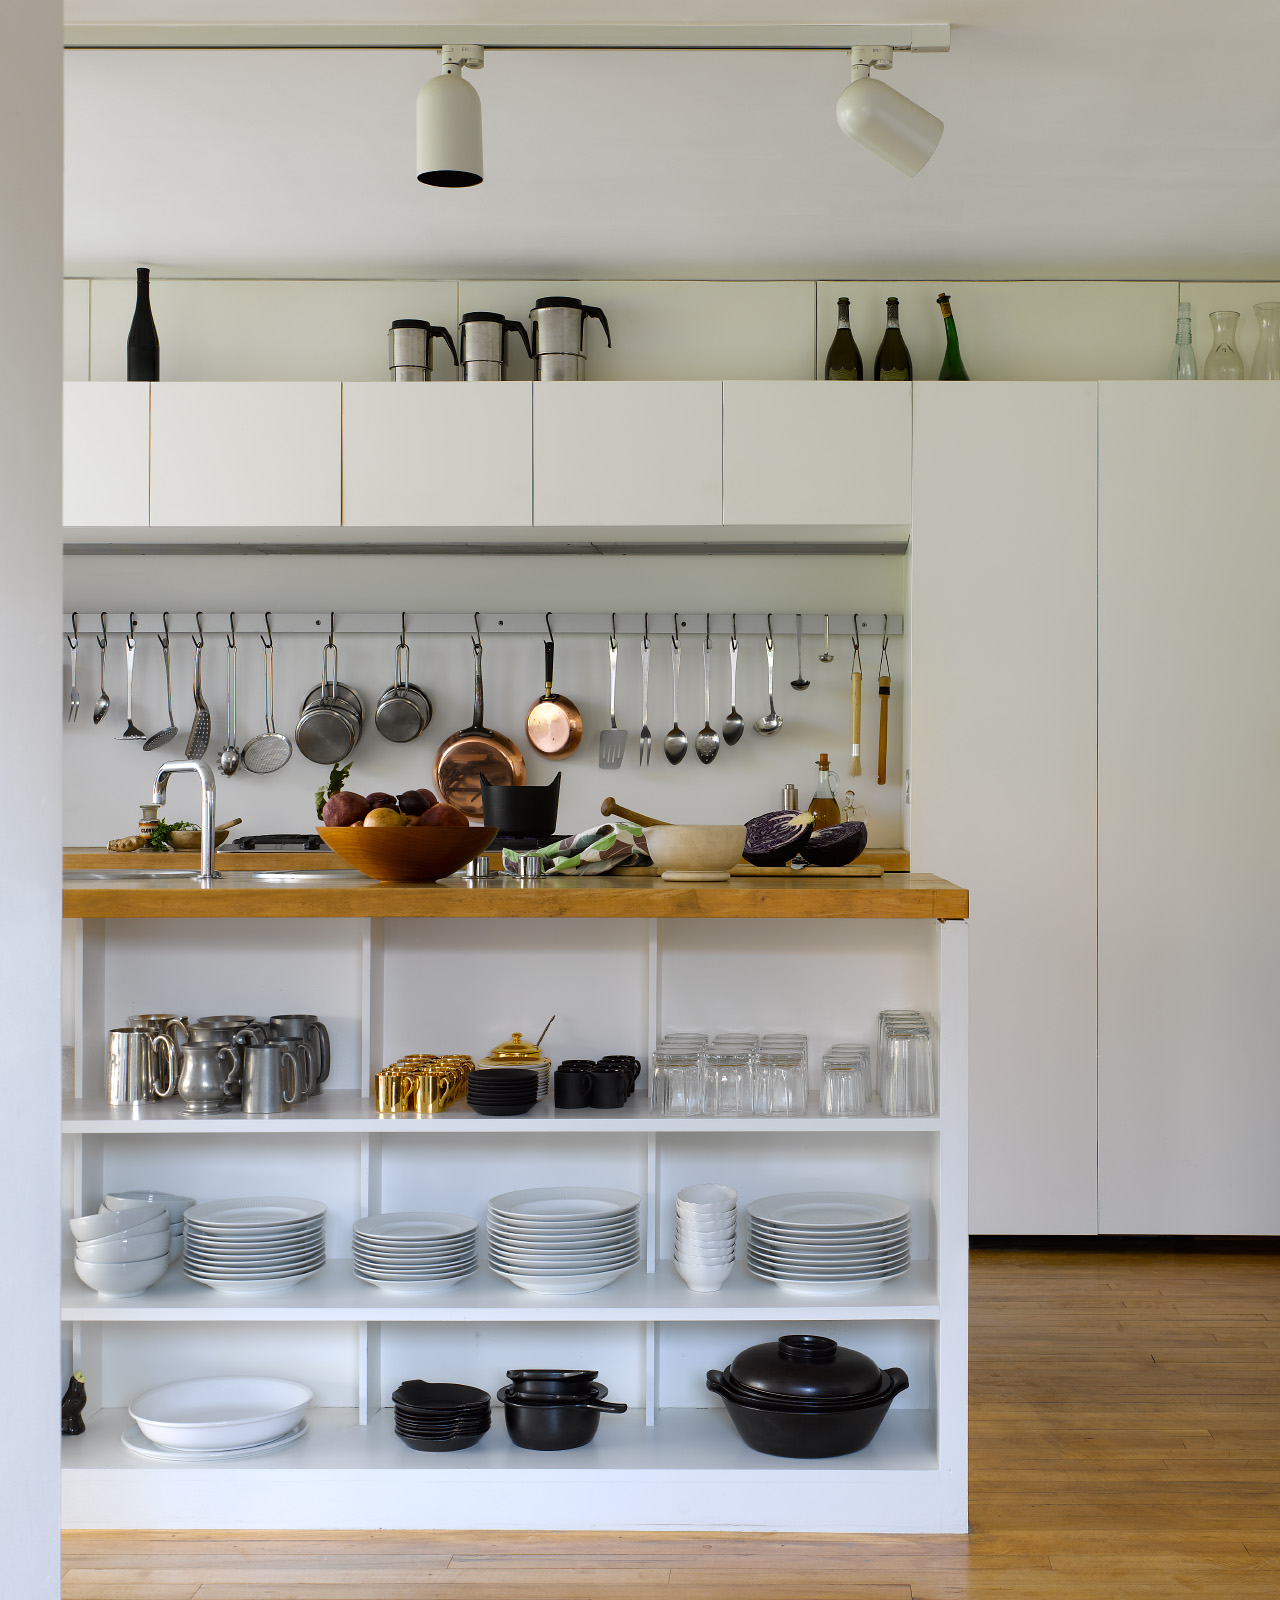 Pierre D'Avoine's kitchen design with VOLA 590 tap